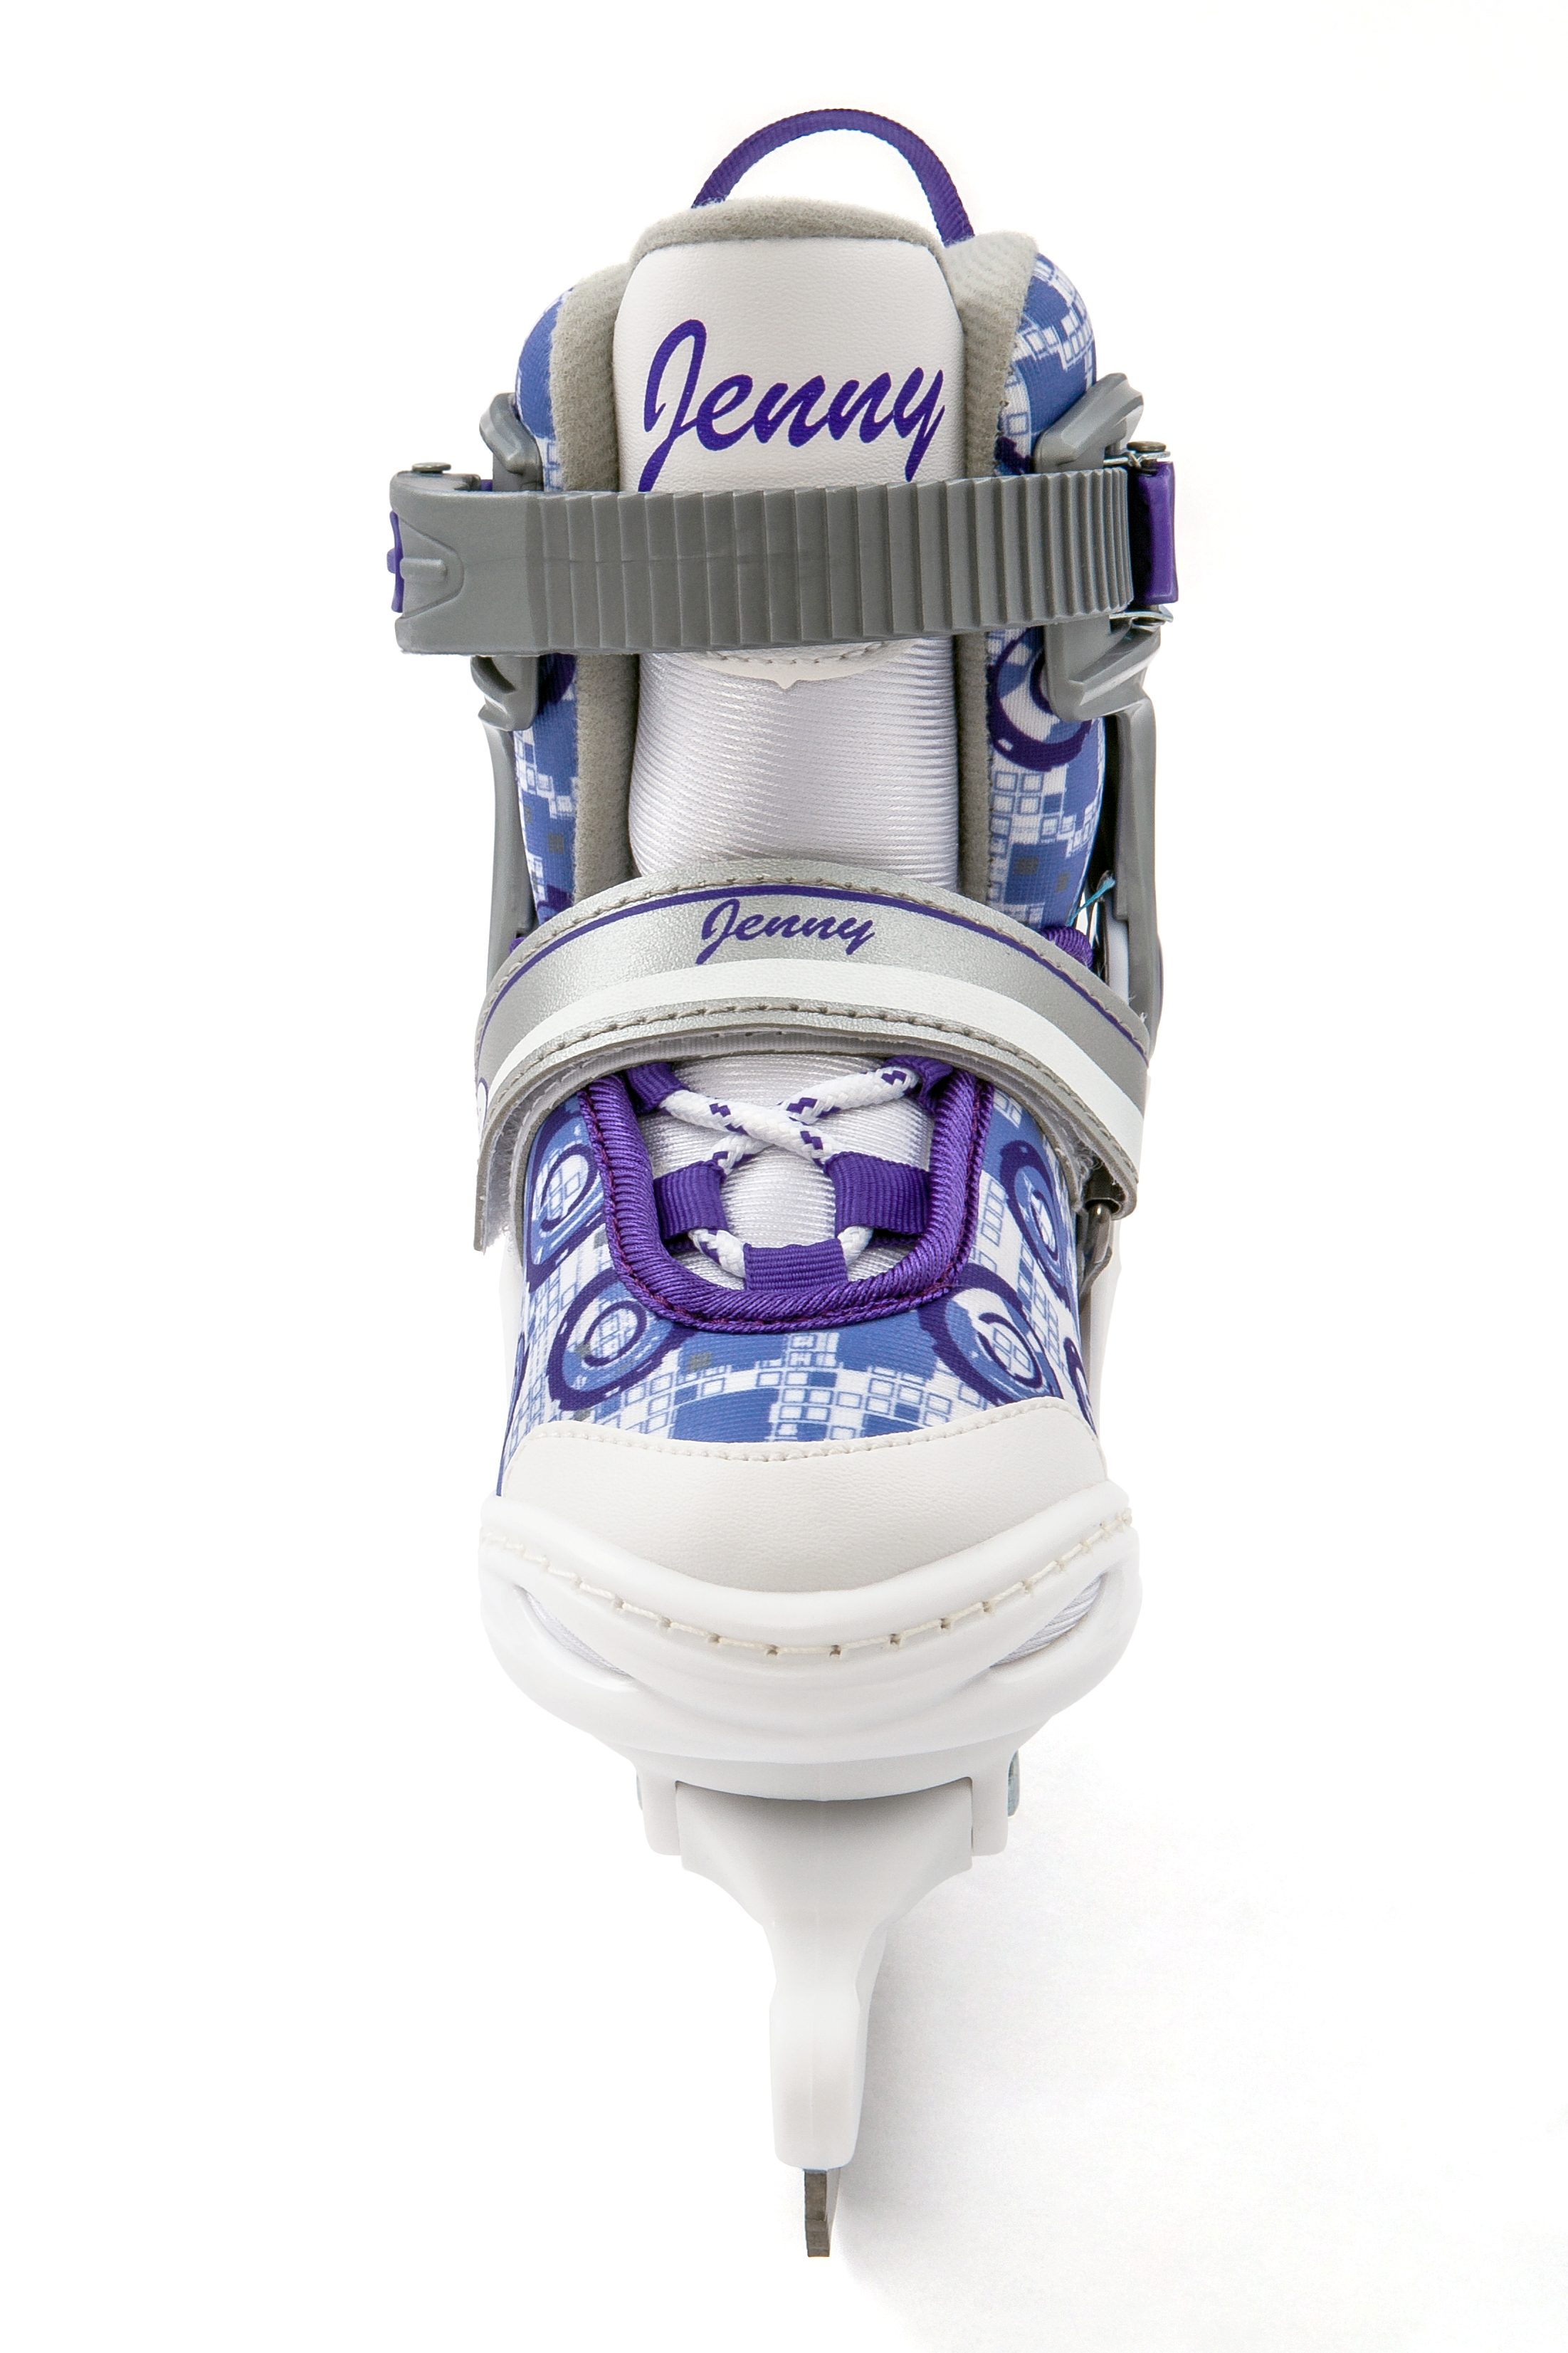 Коньки раздвижные Calambus Jenny ice белый фиолетовый р.30-33 - фото 4